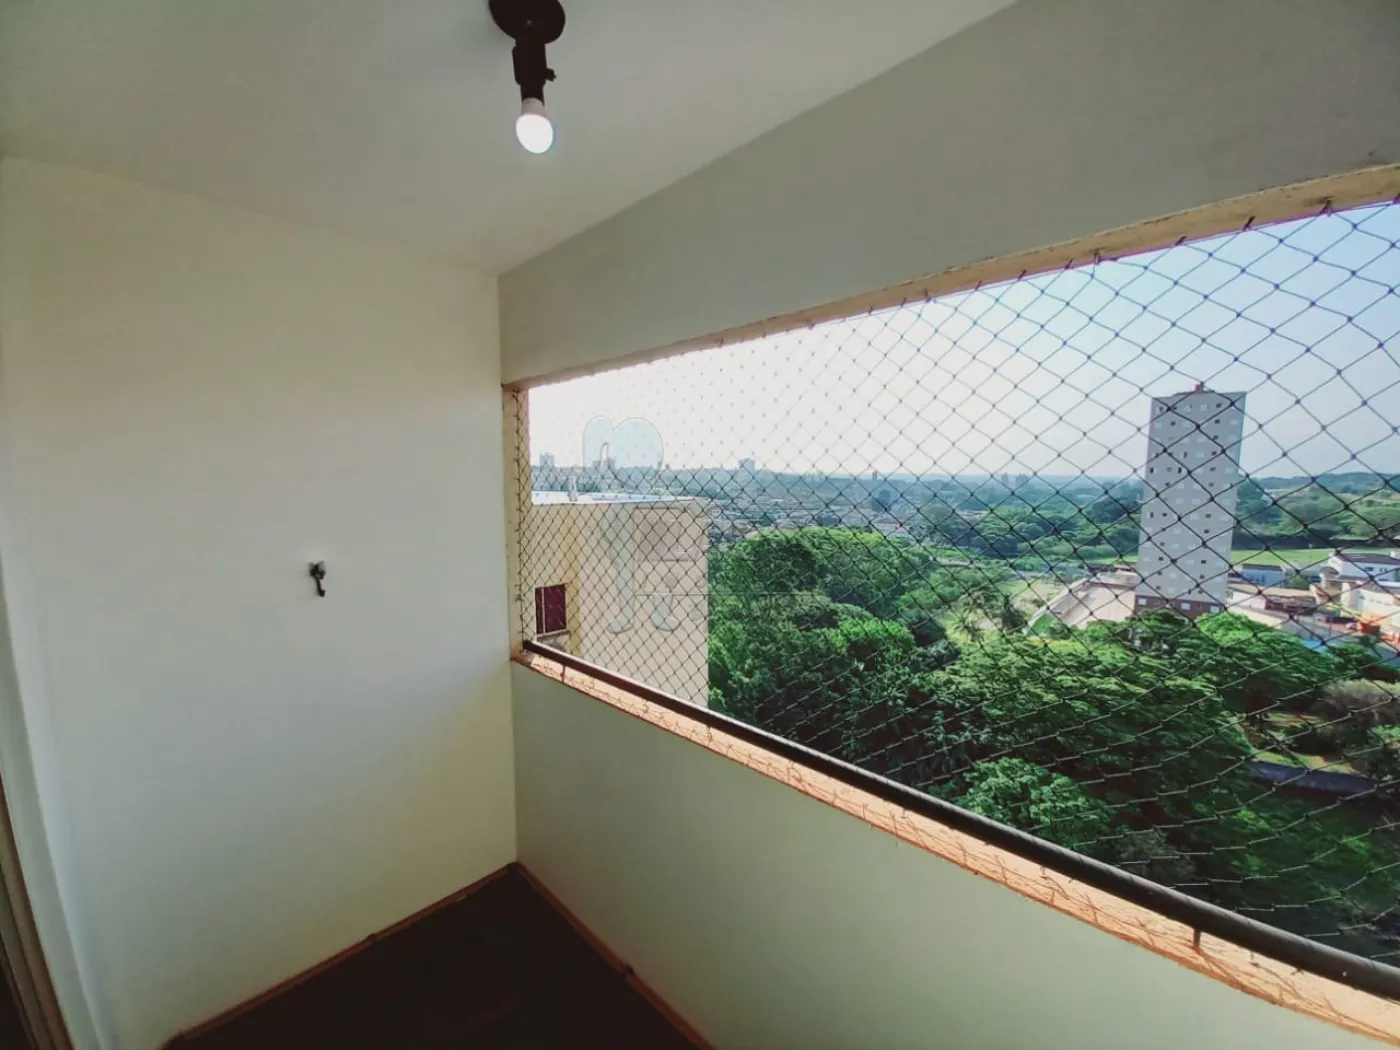 Comprar Apartamento / Padrão em Ribeirão Preto R$ 250.000,00 - Foto 19